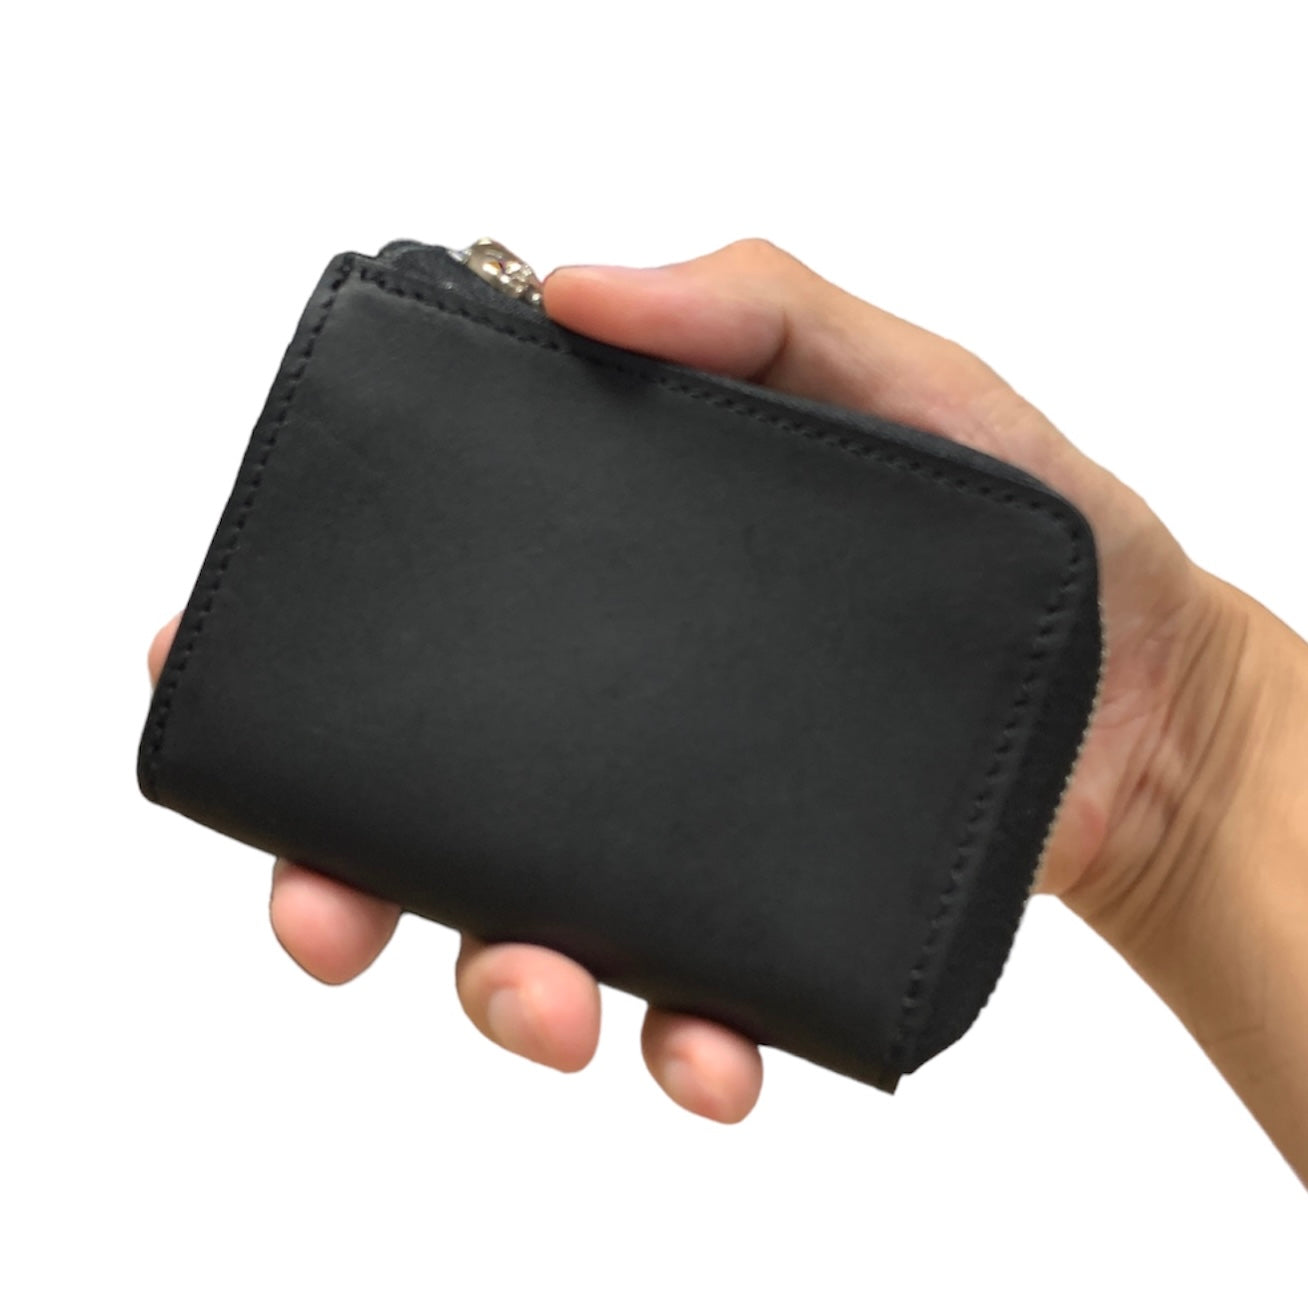 Anak smart key case wallet